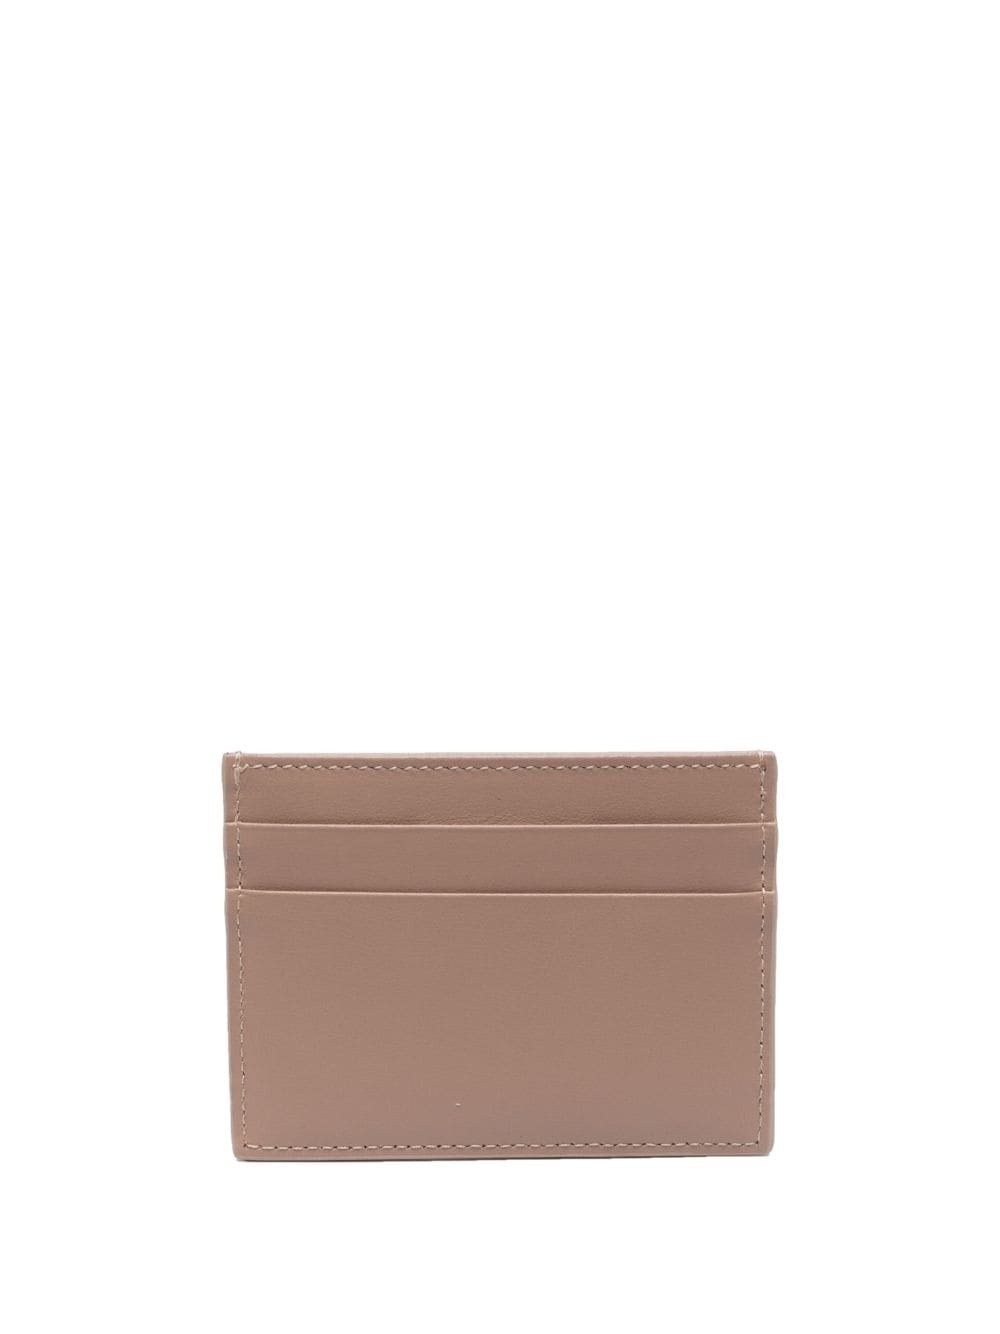 DOLCE & GABBANA - Leather Credit Card Case Dolce & Gabbana